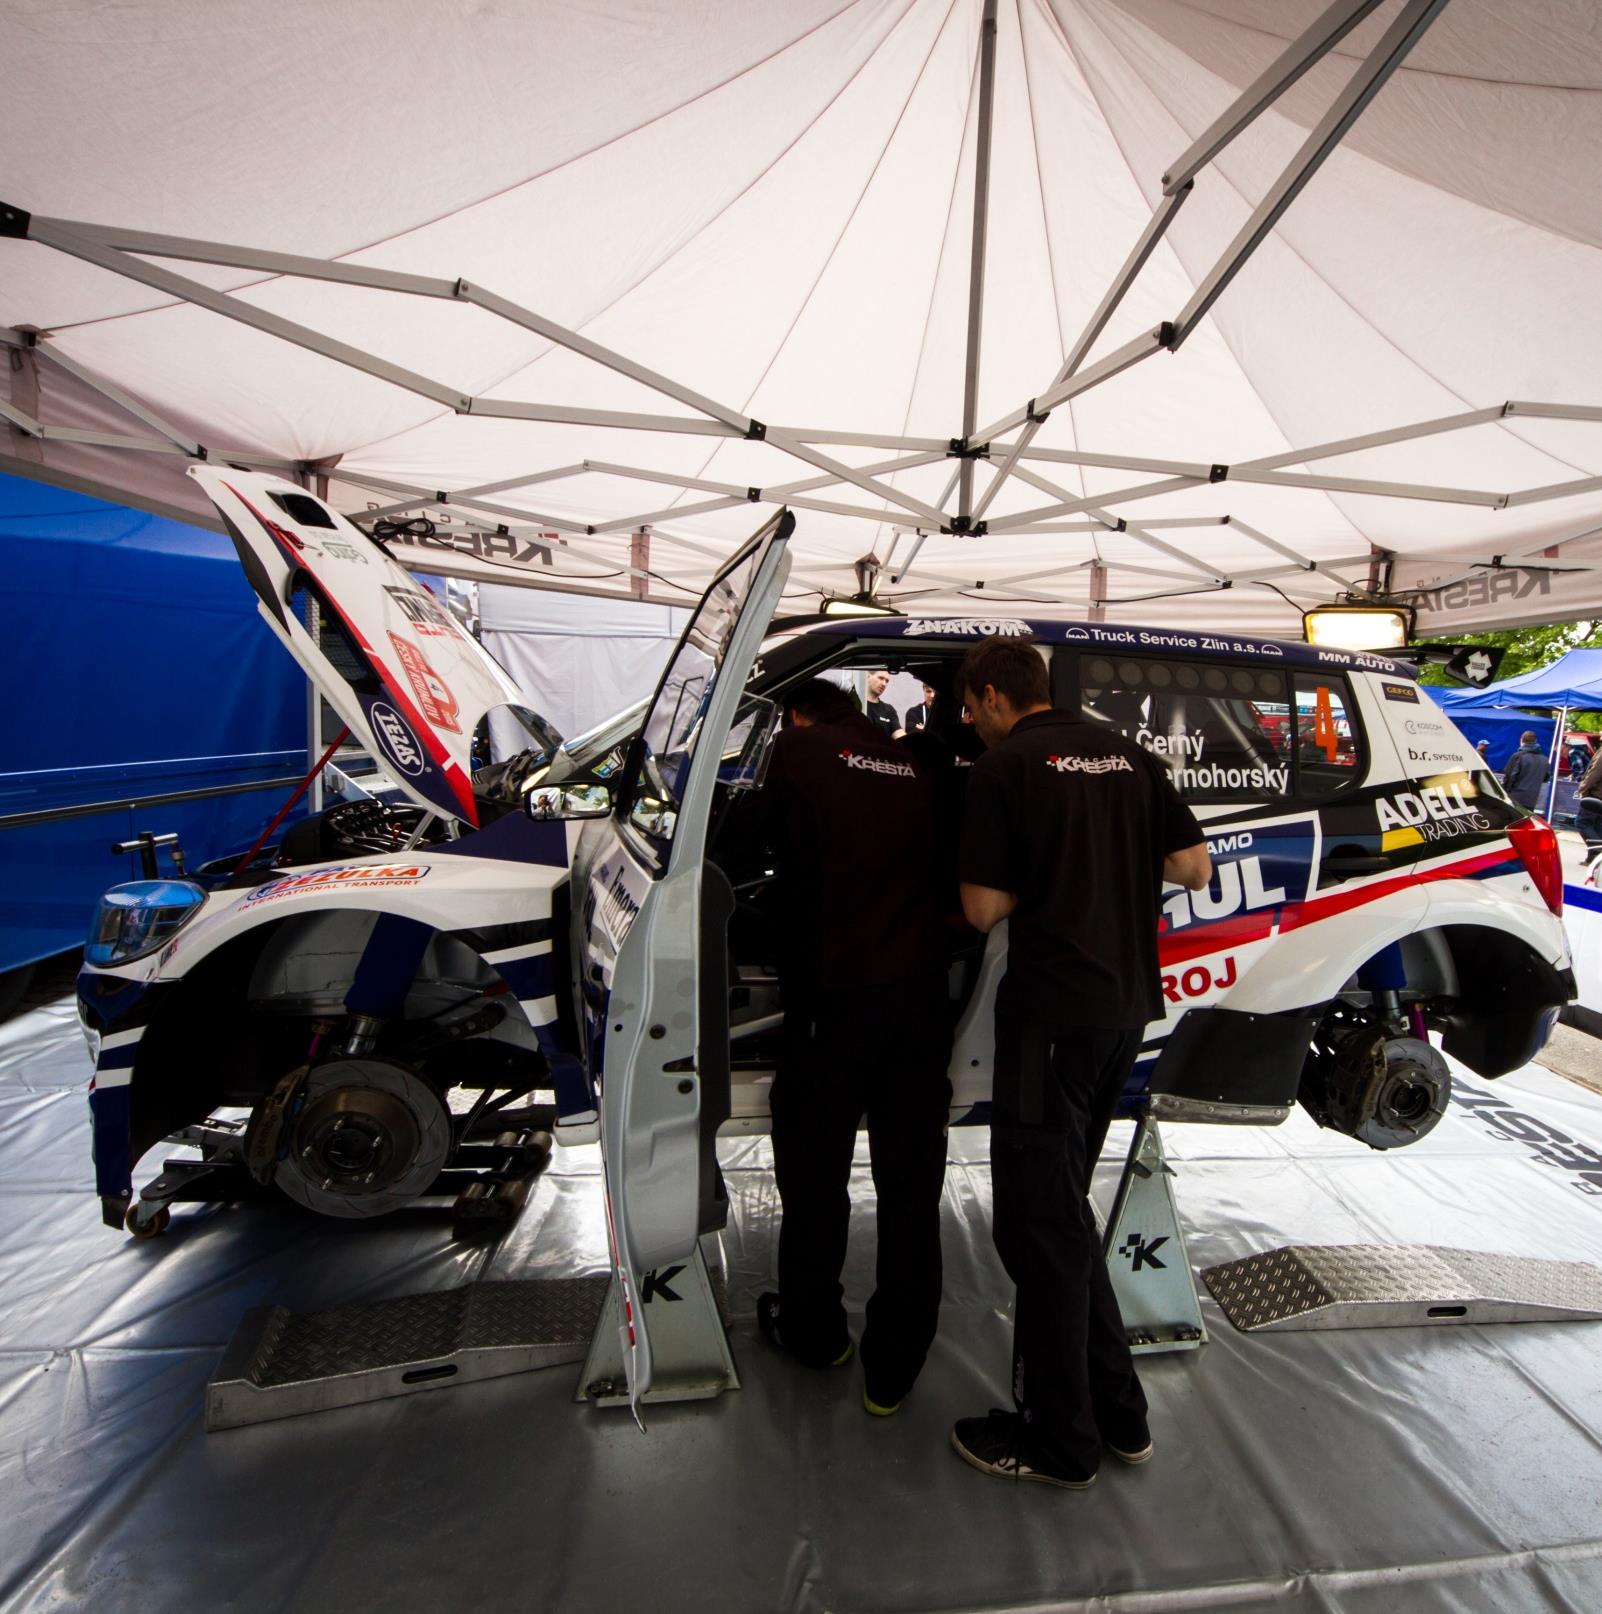 6 O TÝMU Partneři týmu v roce 2015: Ke spojení týmů Černý Racing a Kresta Racing došlo počátkem roku 2015 a to zá účelem podpory startů nadějného Jana Černého s vozem nejvyšší kategorie.